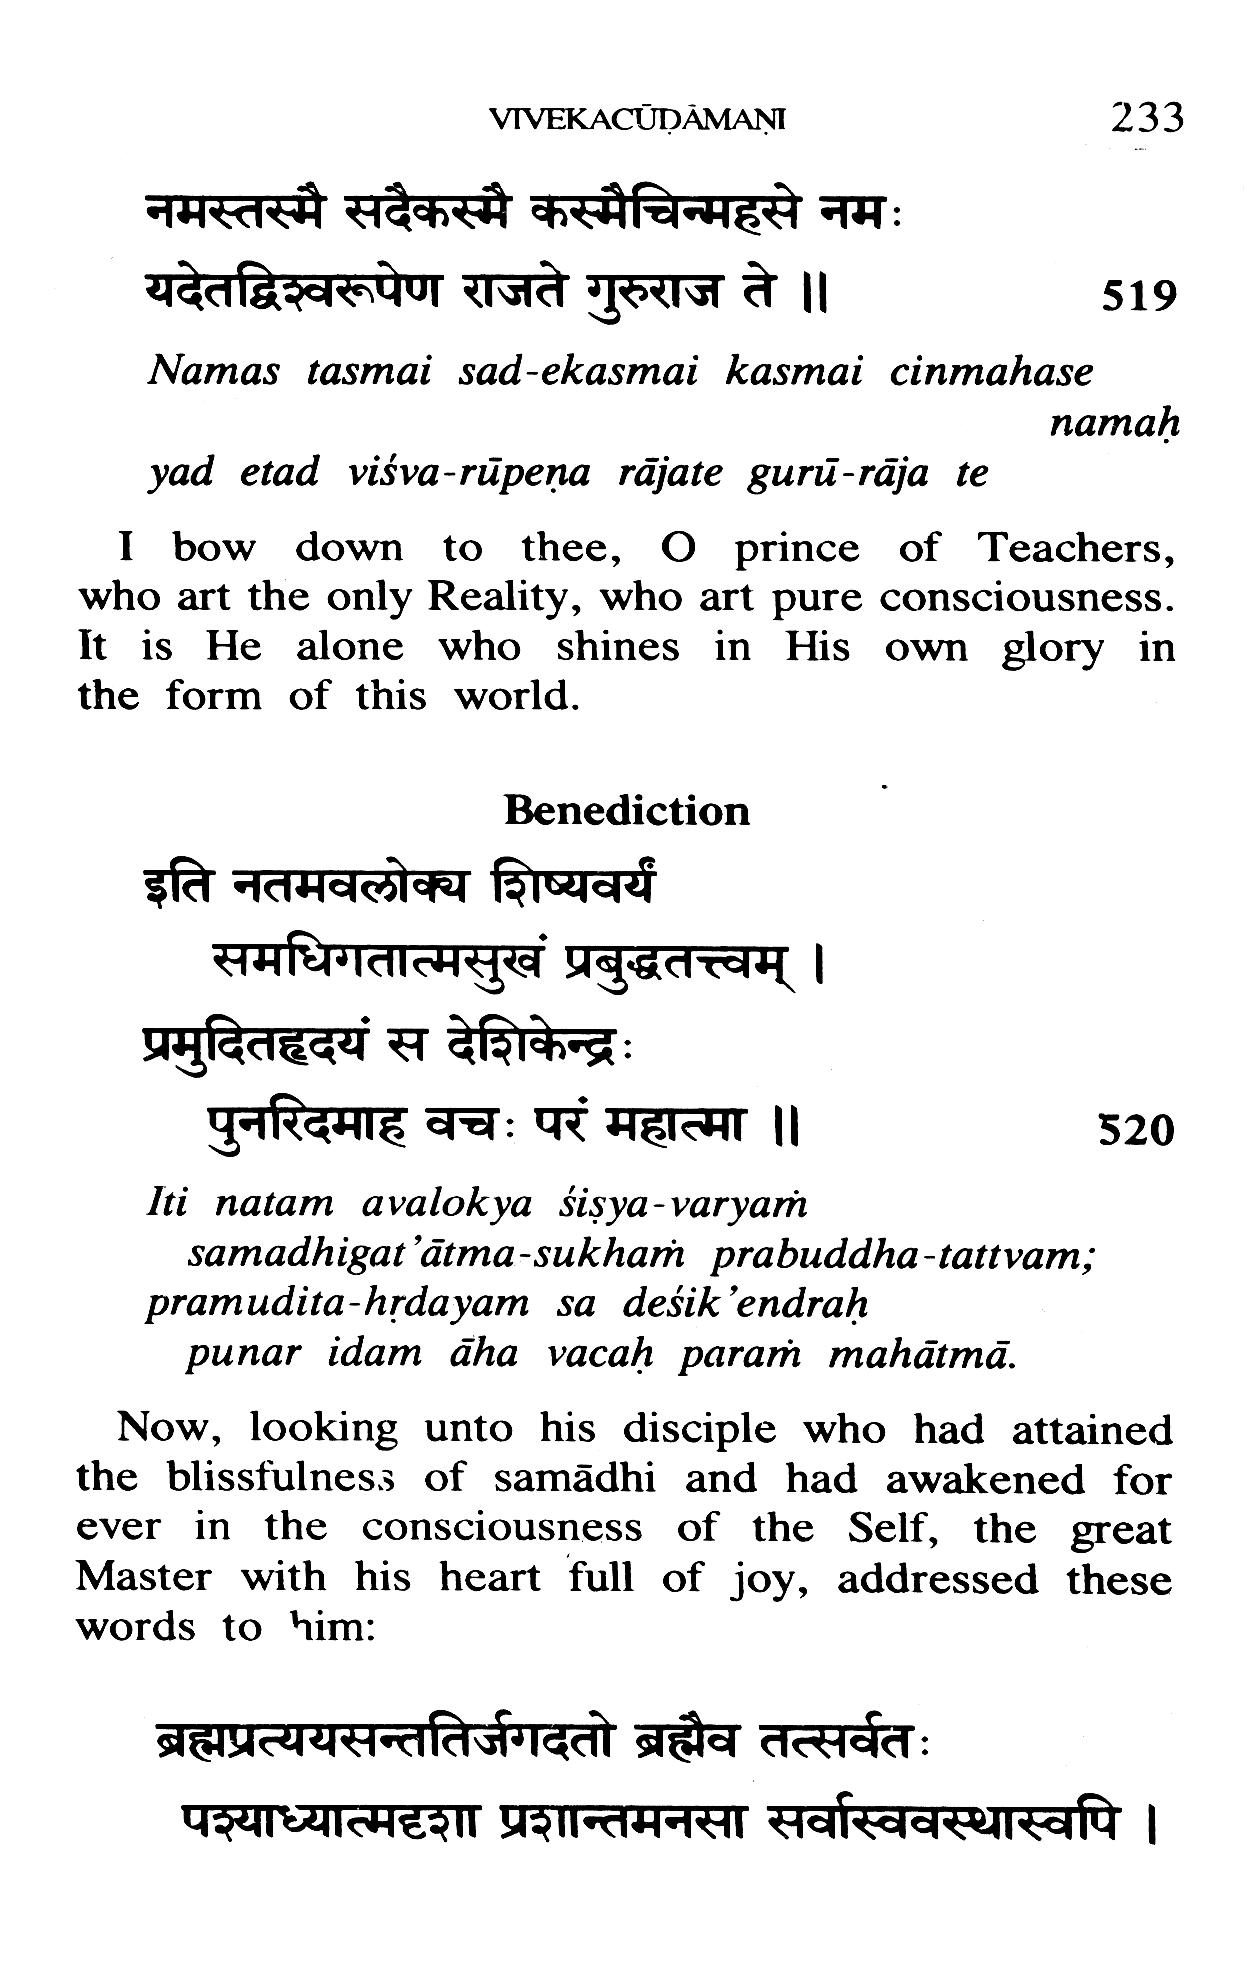 Vivekachudamani of Sri Shankaracharya